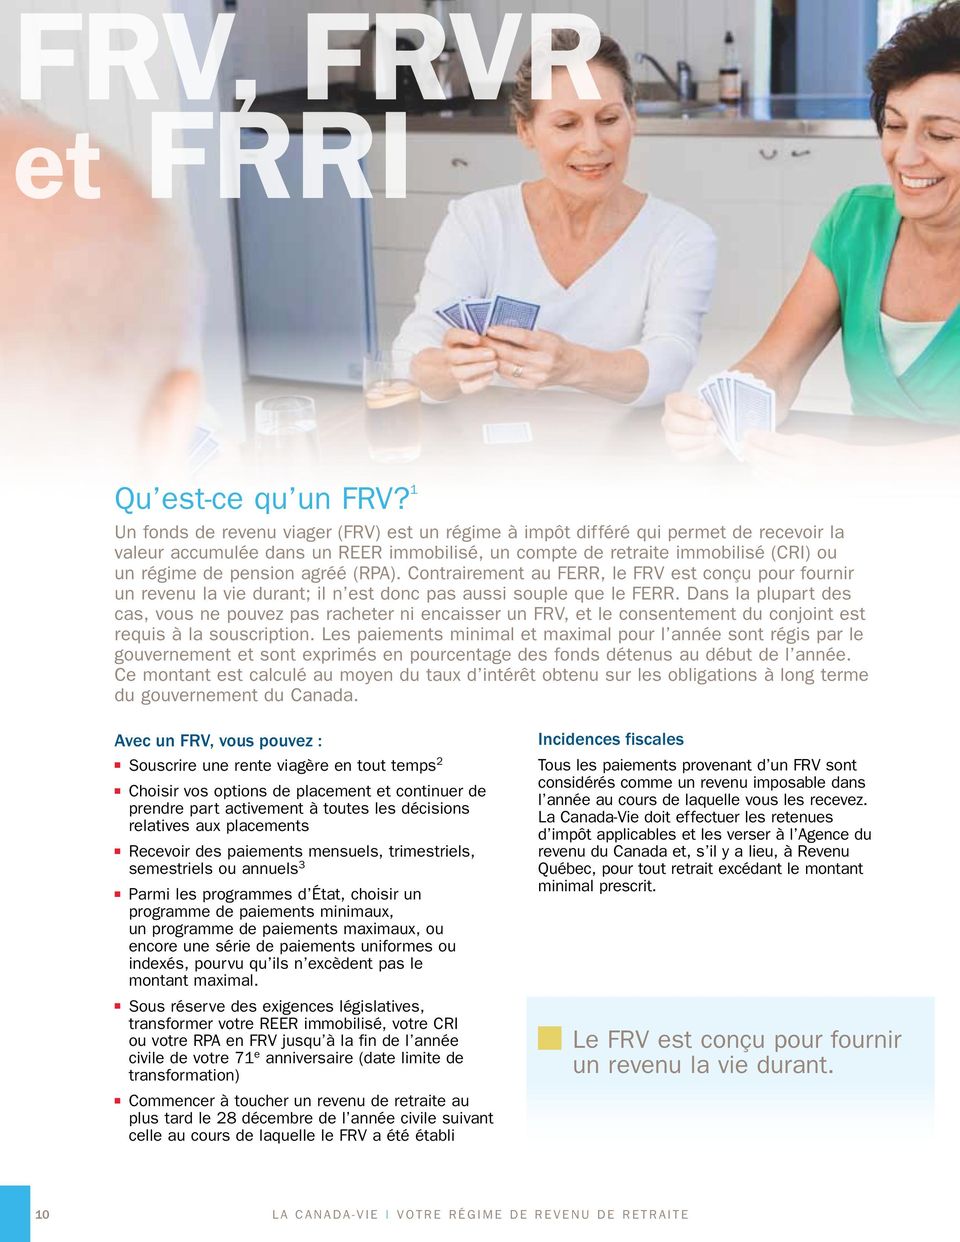 agréé (RPA). Contrairement au FERR, le FRV est conçu pour fournir un revenu la vie durant; il n est donc pas aussi souple que le FERR.